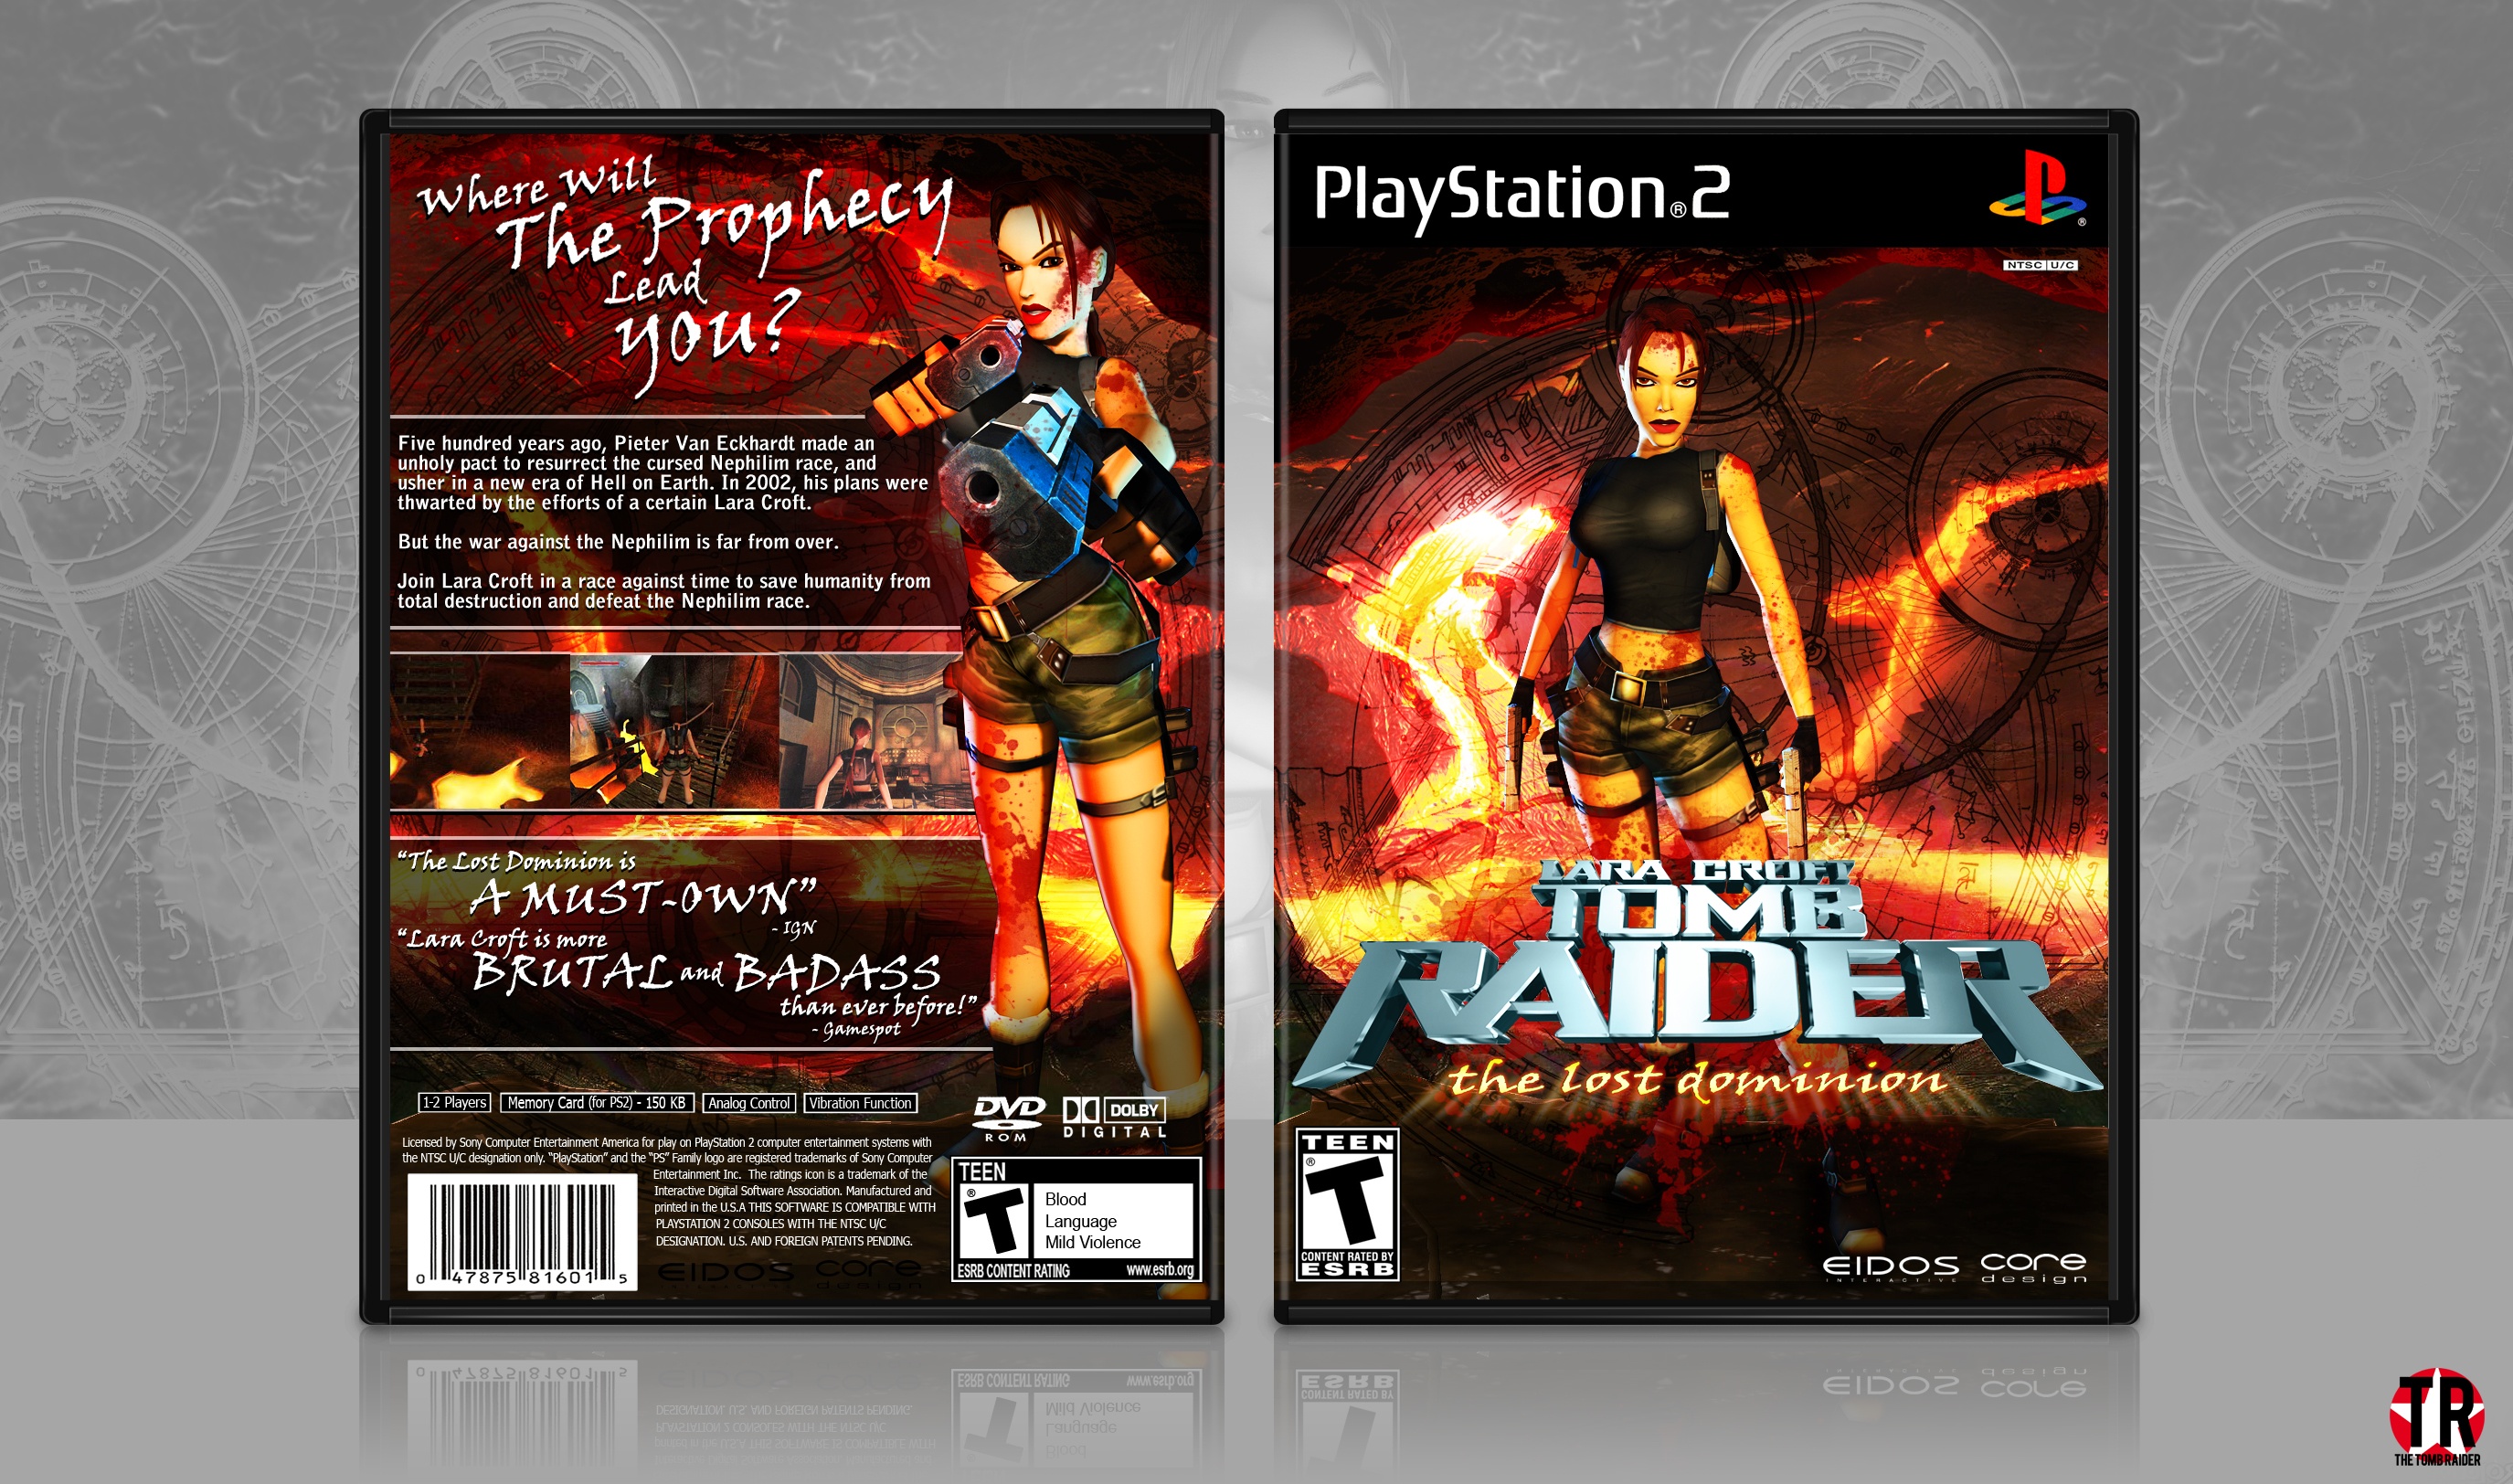 Lara Croft Tomb Raider: The Lost Dominion box cover